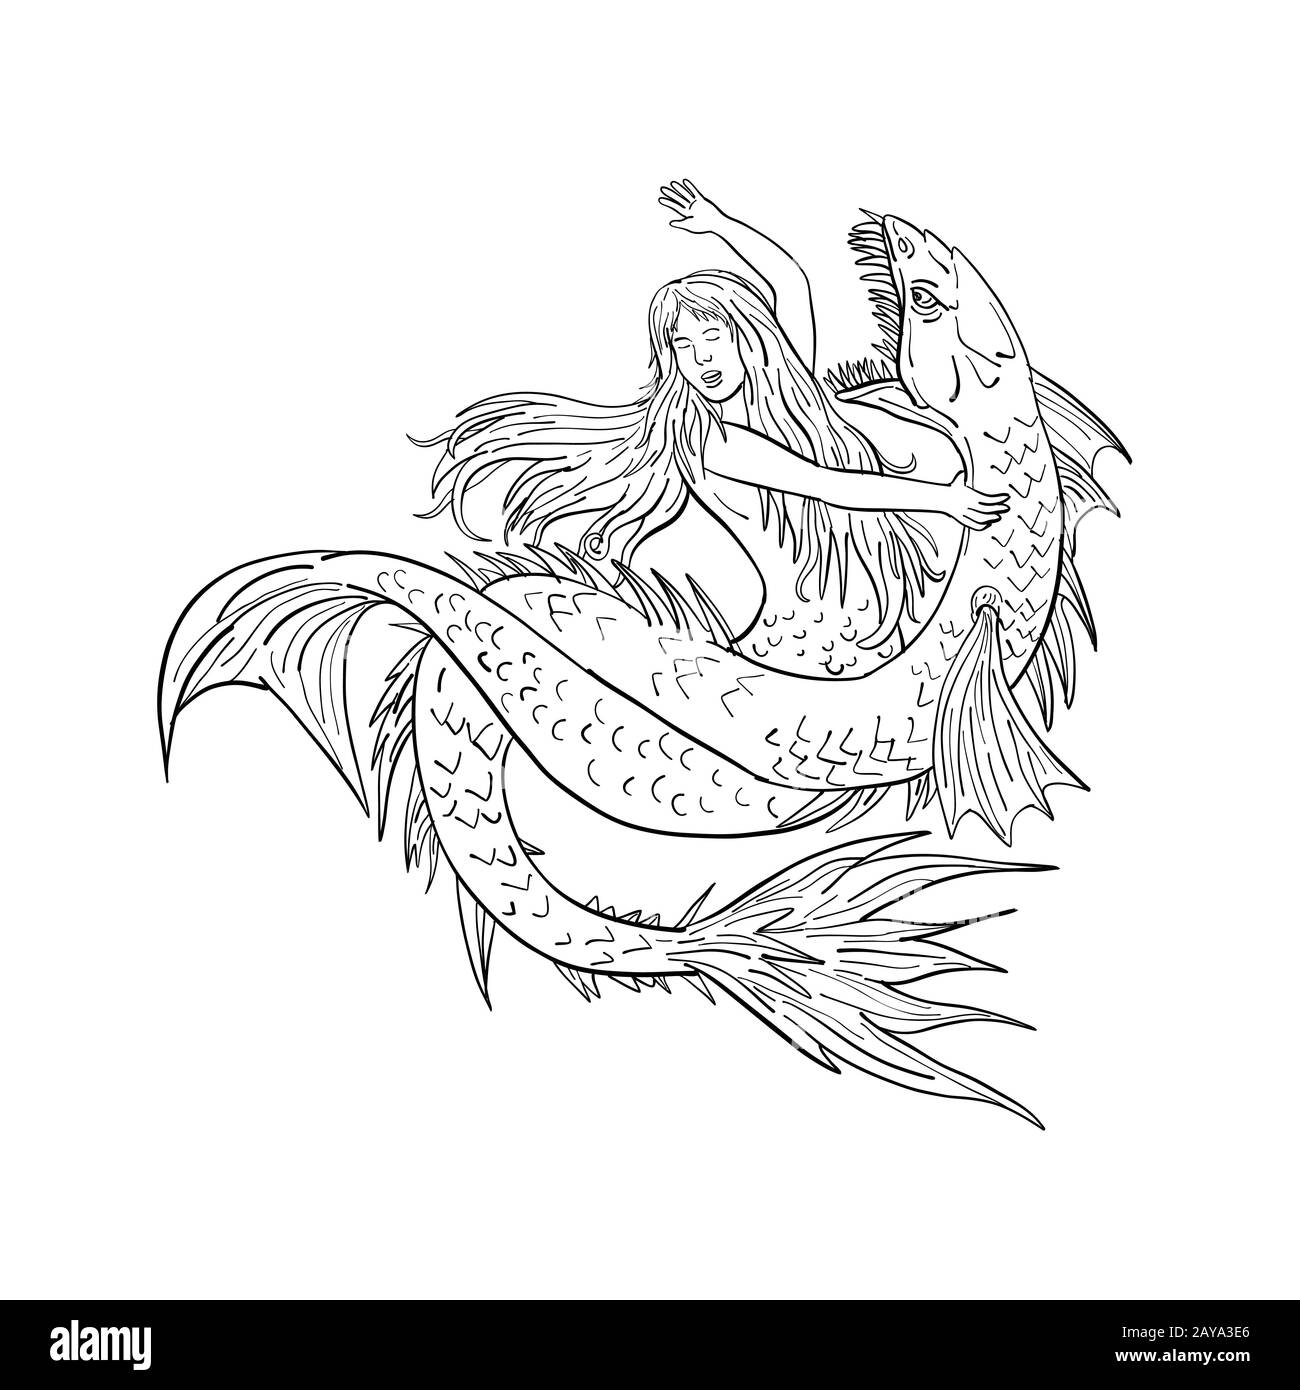 Mermaid Fighting a Sea Serpent Dessin noir et blanc Banque D'Images